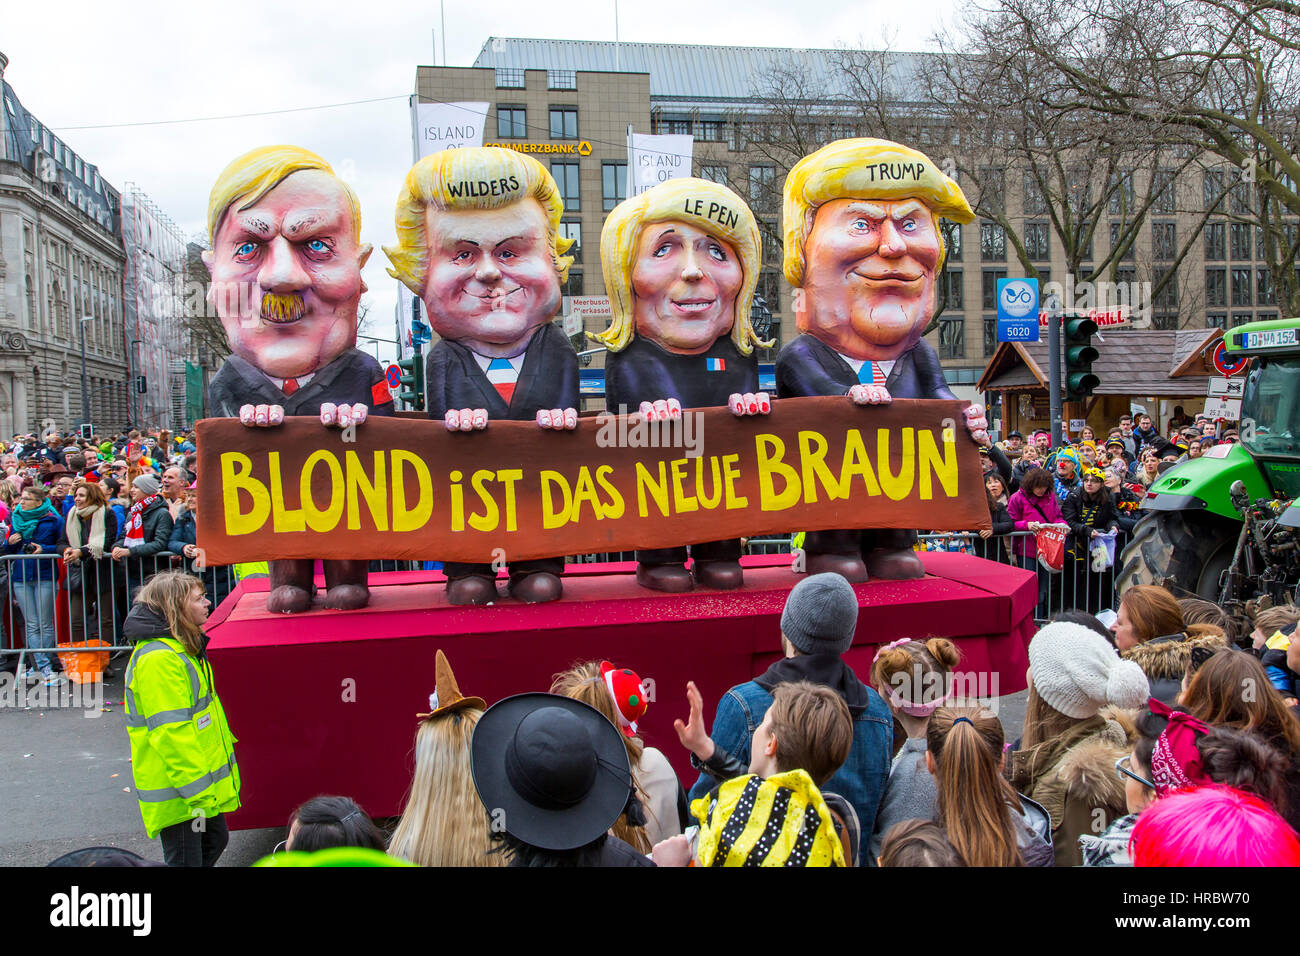 Il tedesco sfilata di carnevale a DŸsseldorf, carri di Carnevale progettato come politico caricature, bionda è il nuovo marrone, mostrando l'ala destra politico, Adolf Foto Stock